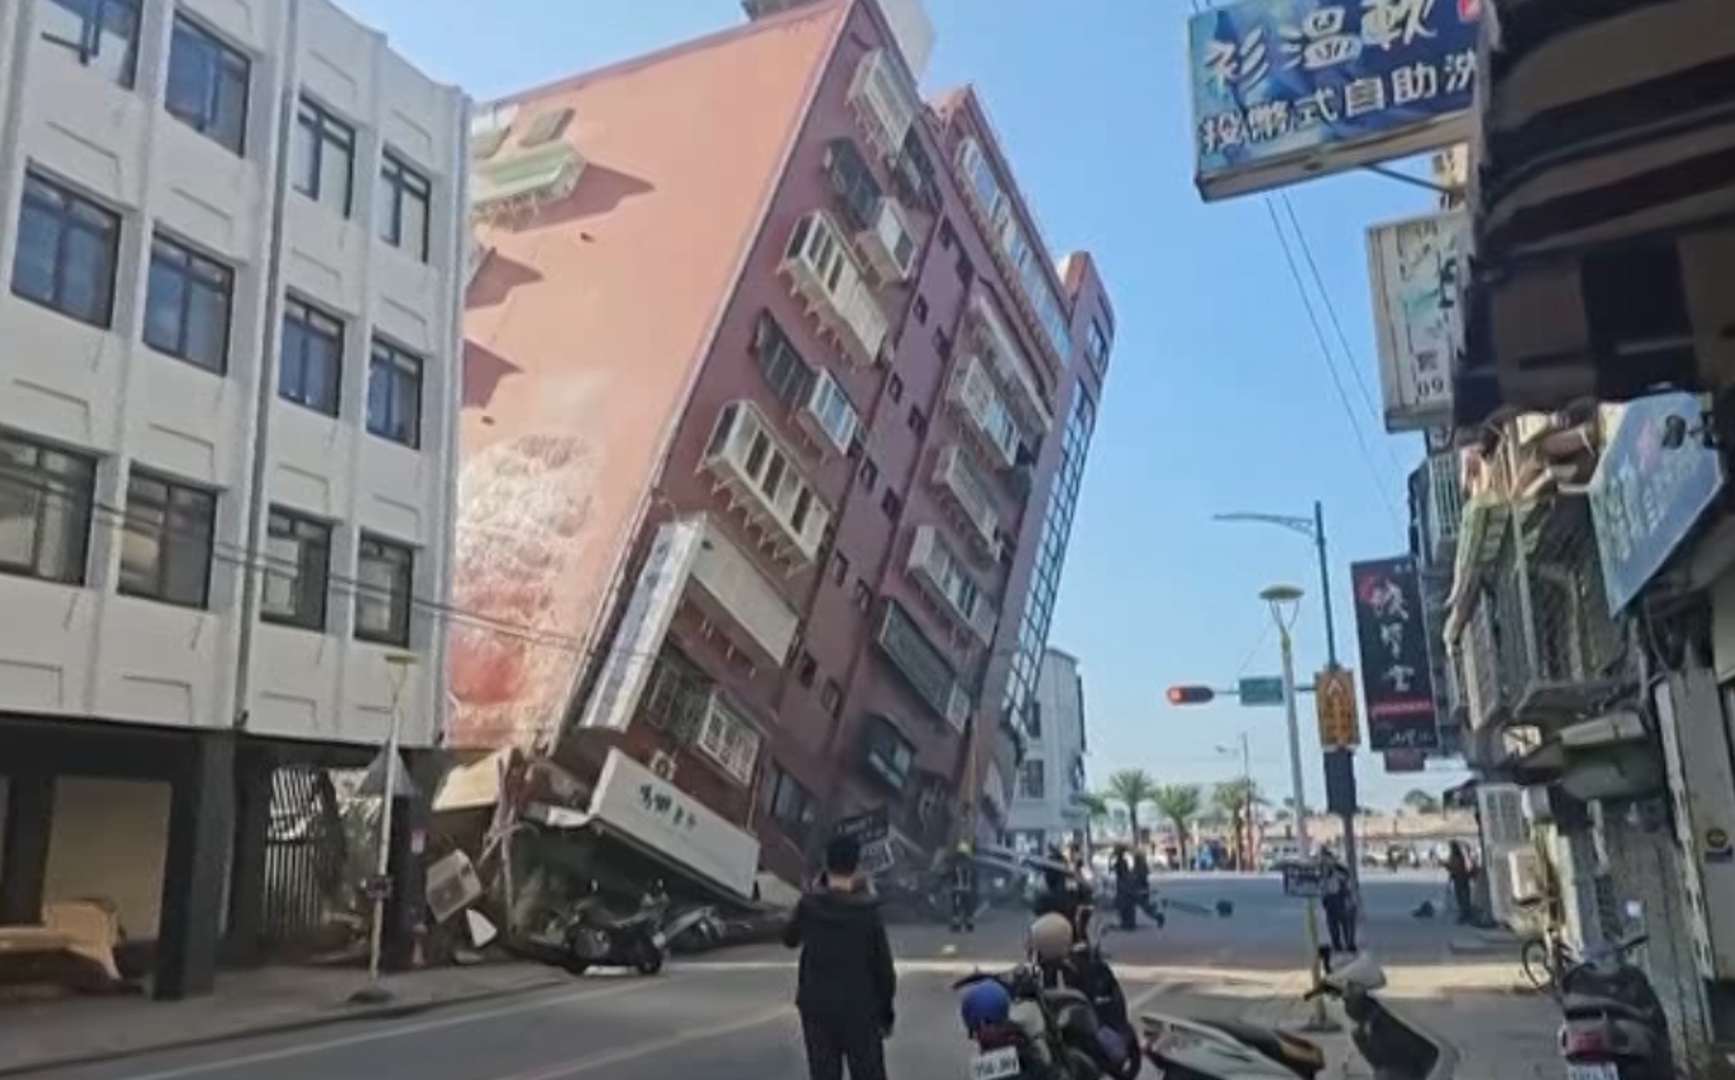 Filipinska seizmološka agencija također je izdala upozorenje za stanovnike obalnih područja i pozvala ih da se sklone na viši teren. Potres se osjetio u Šangaju u Kini, rekli su očevici. Kineski mediji navode da se osjetio i u Fuzhou, Xiamenu, Quanzhou i u Ningdeu u pokrajini Fujian.